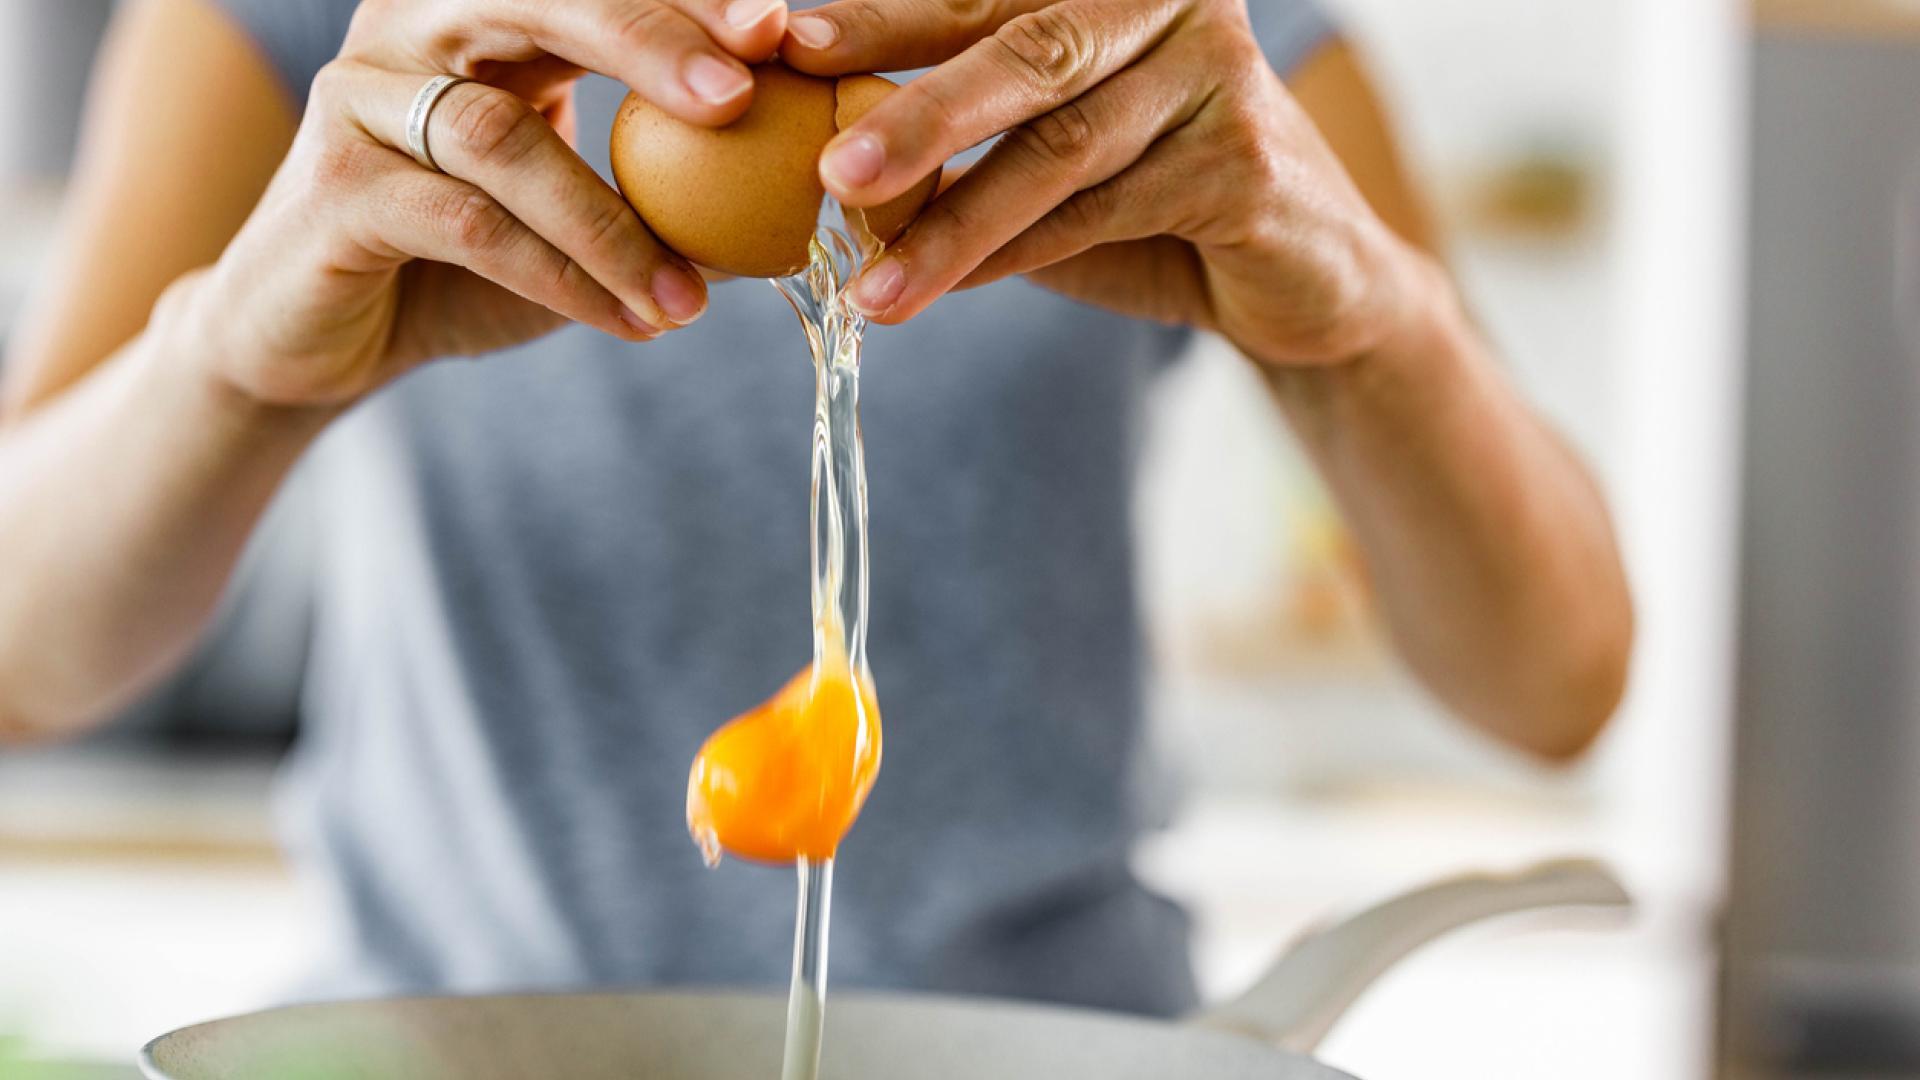 amazon, 5 utensilios para preparar el huevo a la perfección: facilidad en la cocina por menos de 15 euros